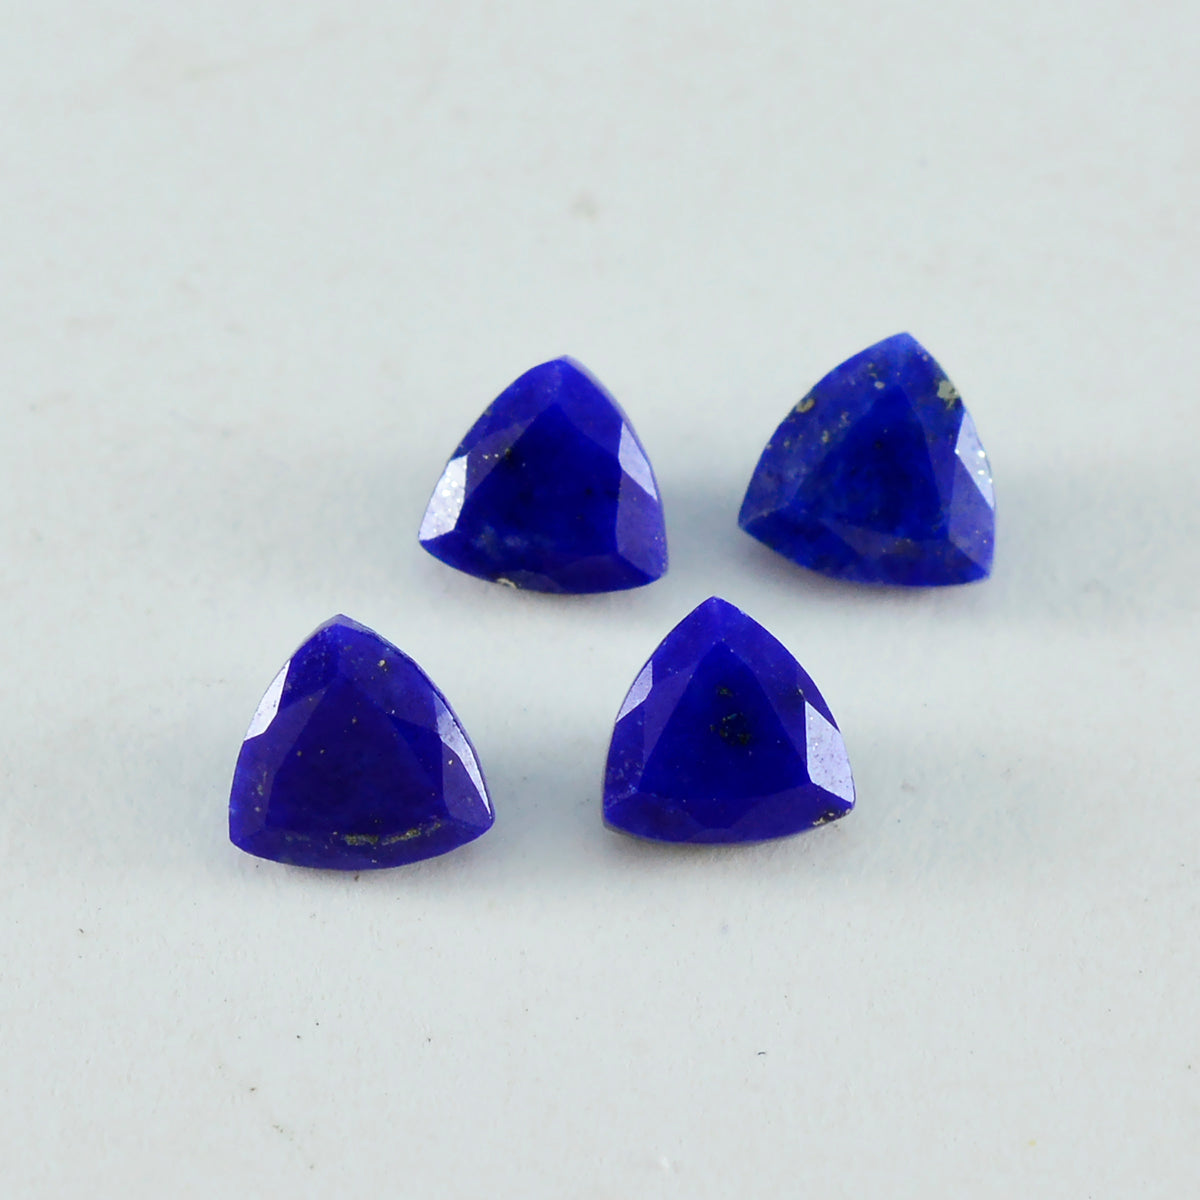 riyogems 1 шт. натуральный синий лазурит ограненный 8x8 мм форма триллиона удивительного качества свободный камень